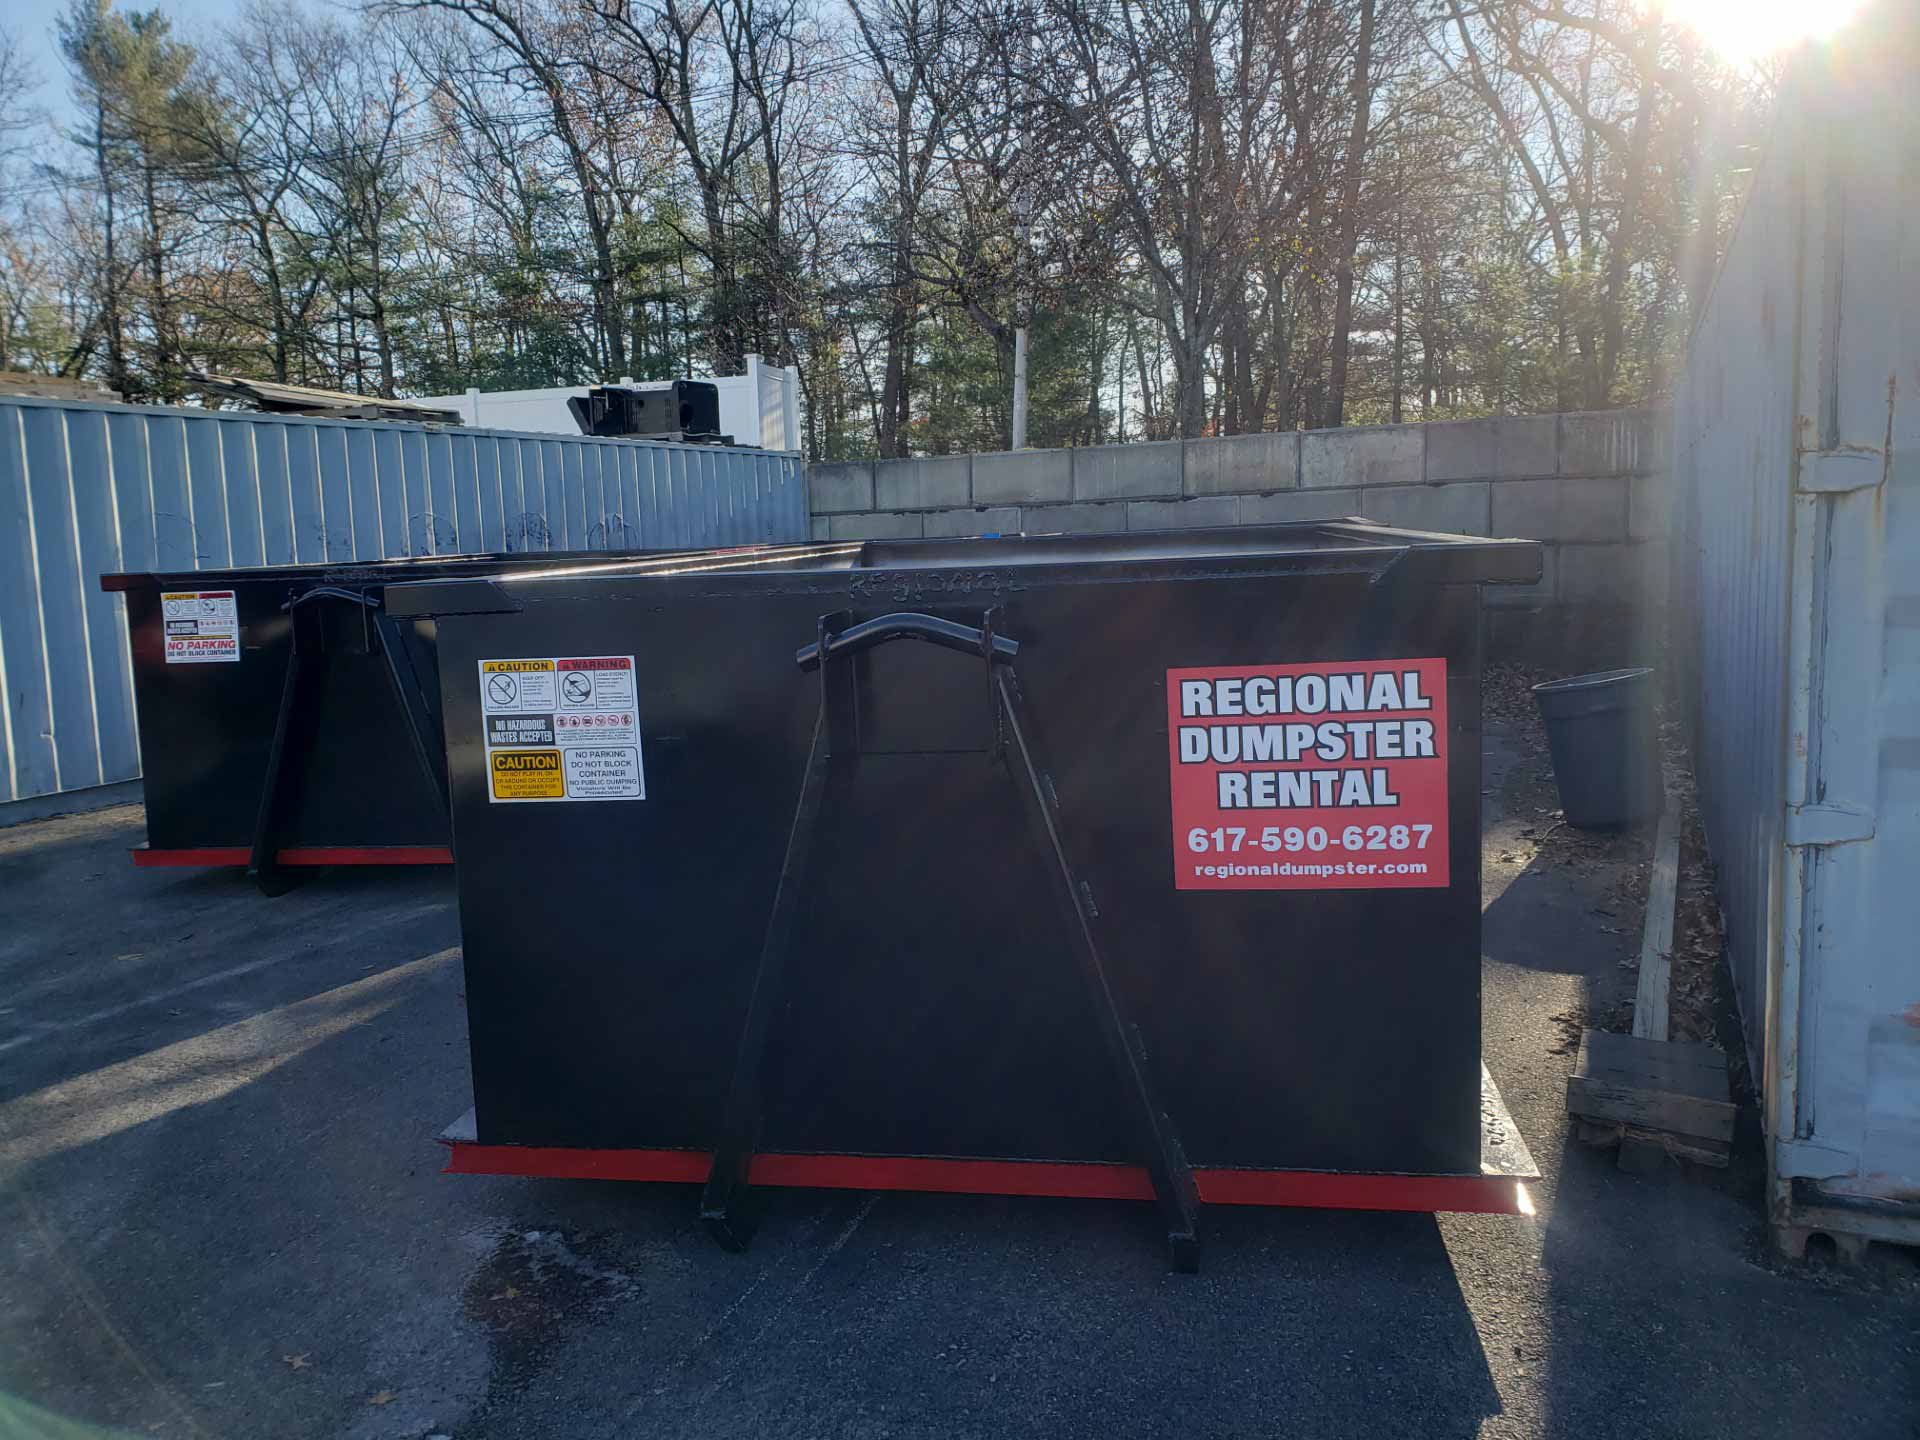 Two Regional Dumpster Rental rental dumpsters